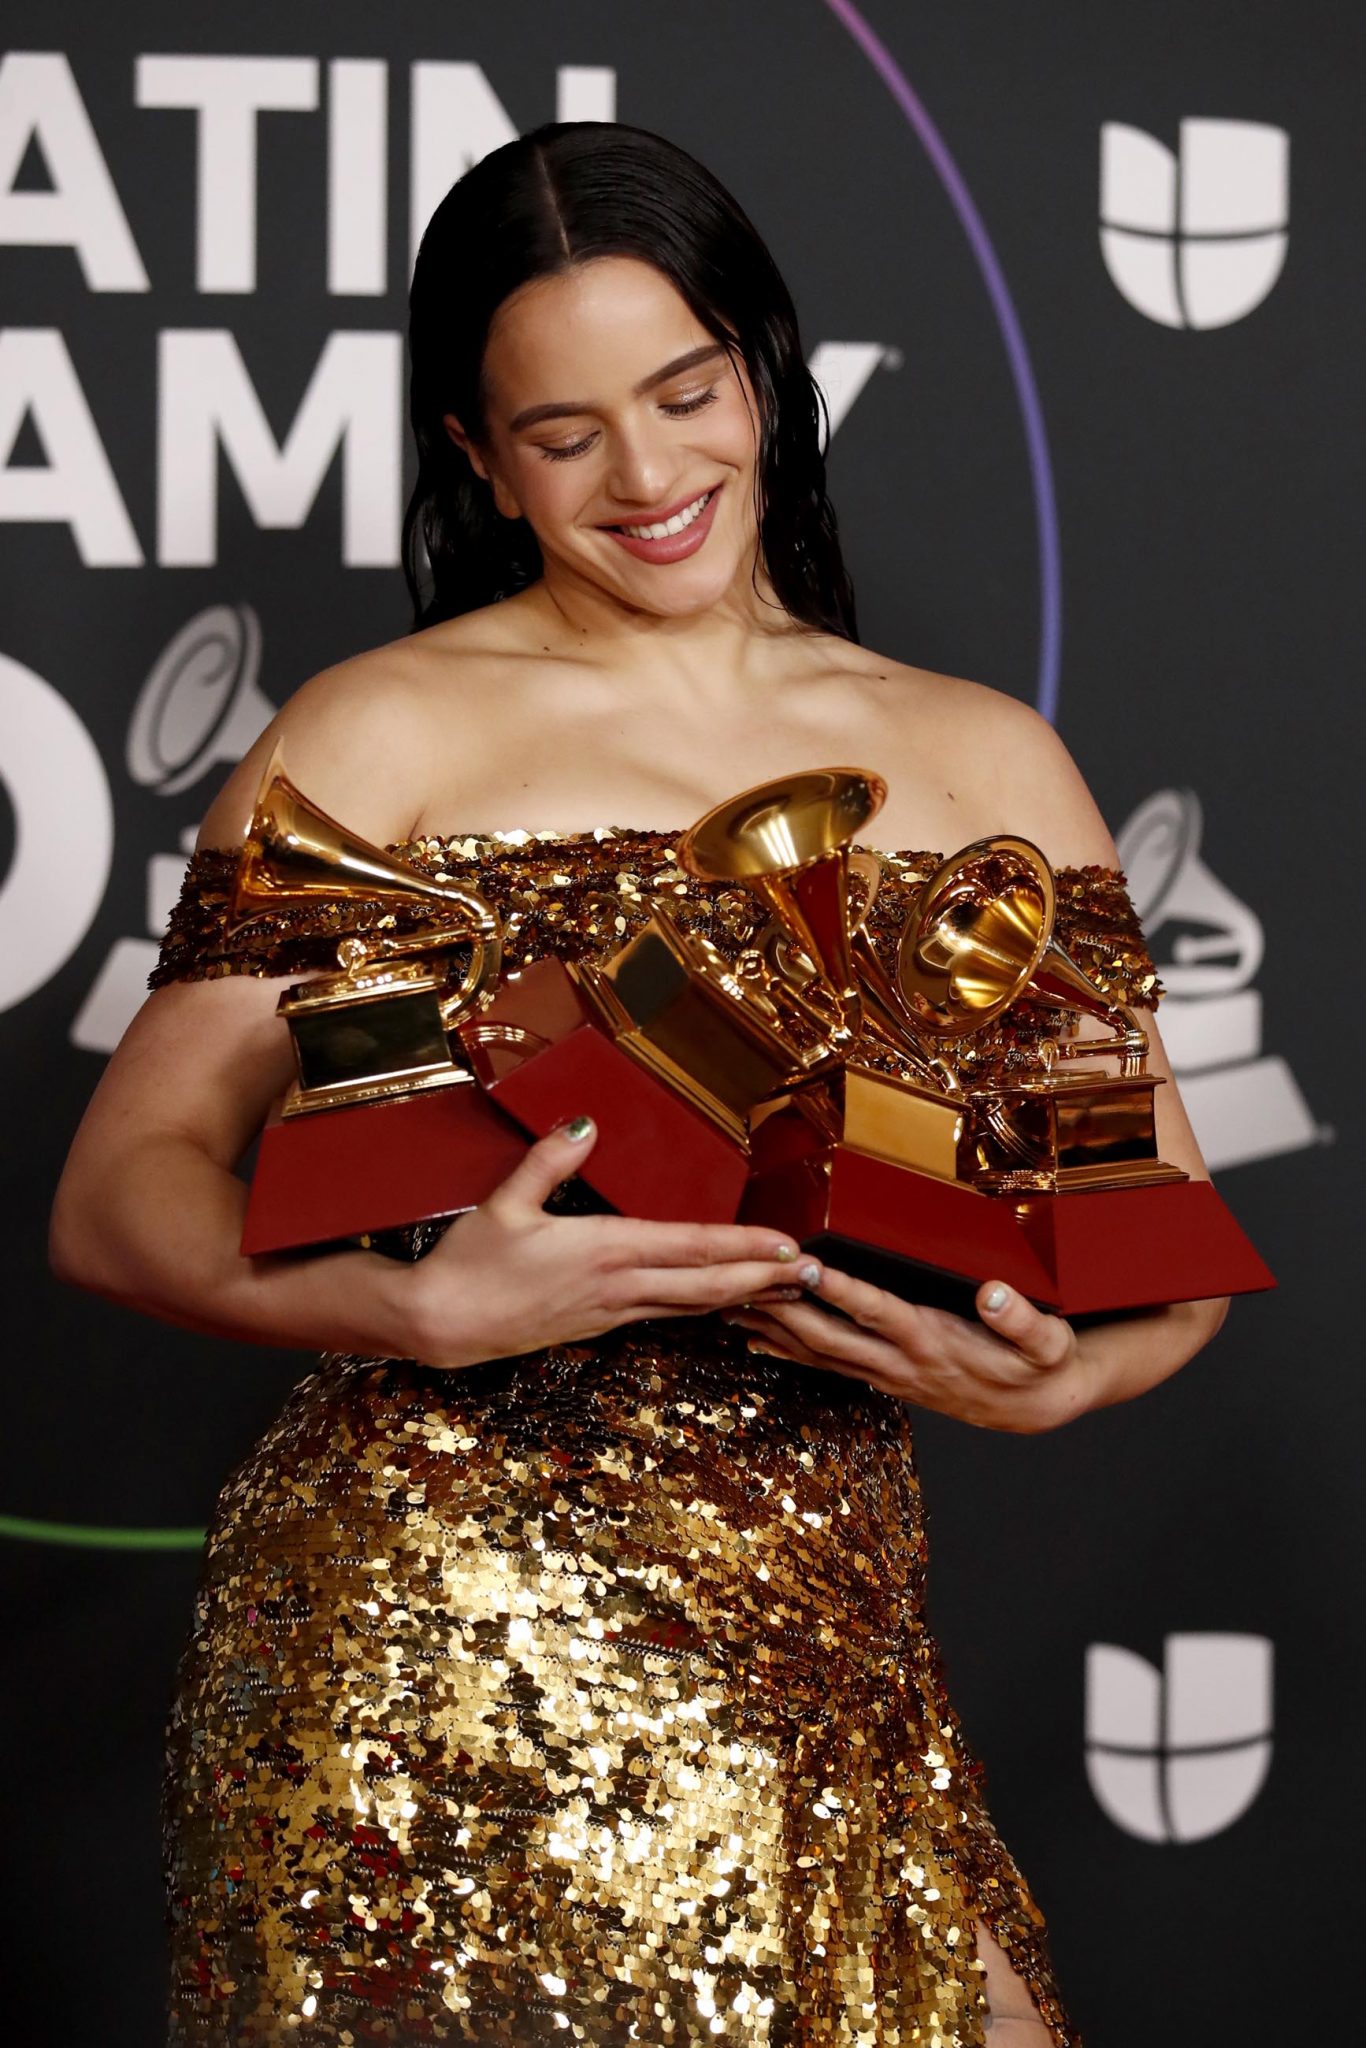 Rosalía gana el Latin Grammy a mejor álbum del año con “Motomami” La